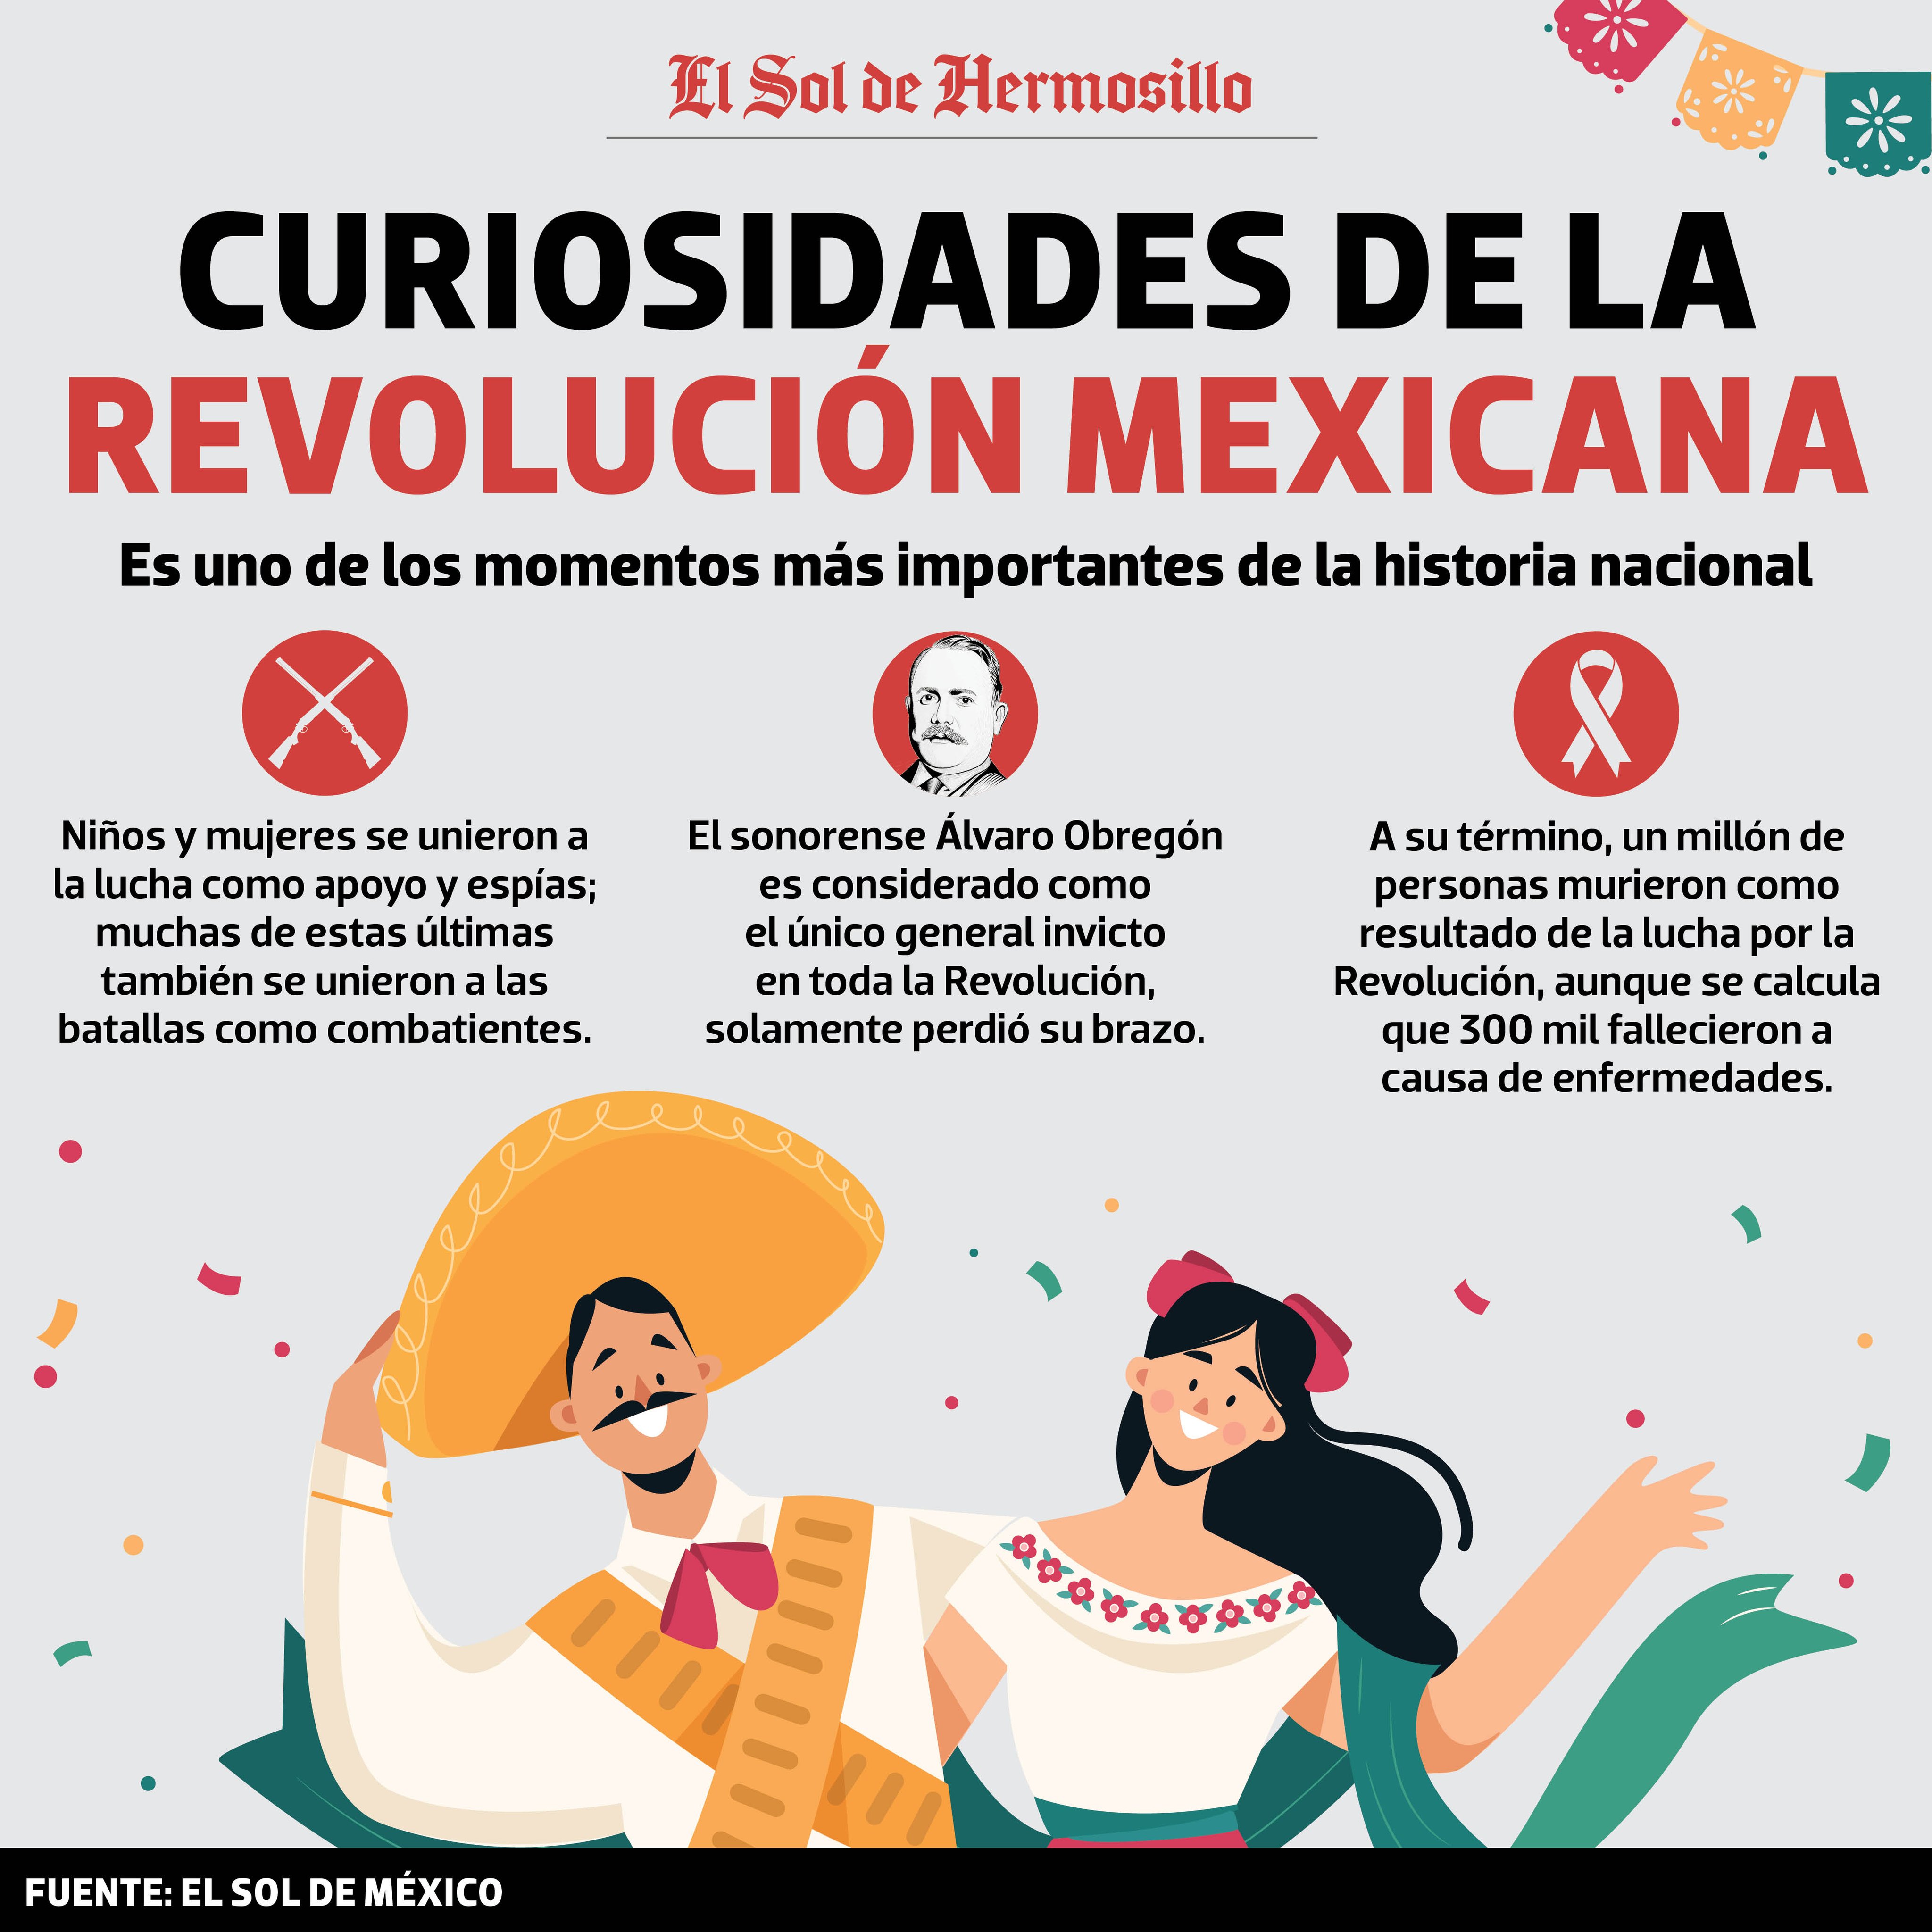 El Sol de Hermosillo Twitter: "#Infografía| La Revolución Mexicana es uno de más importantes de la historia nacional. https://t.co/Nb8BDX0ZMQ" / Twitter